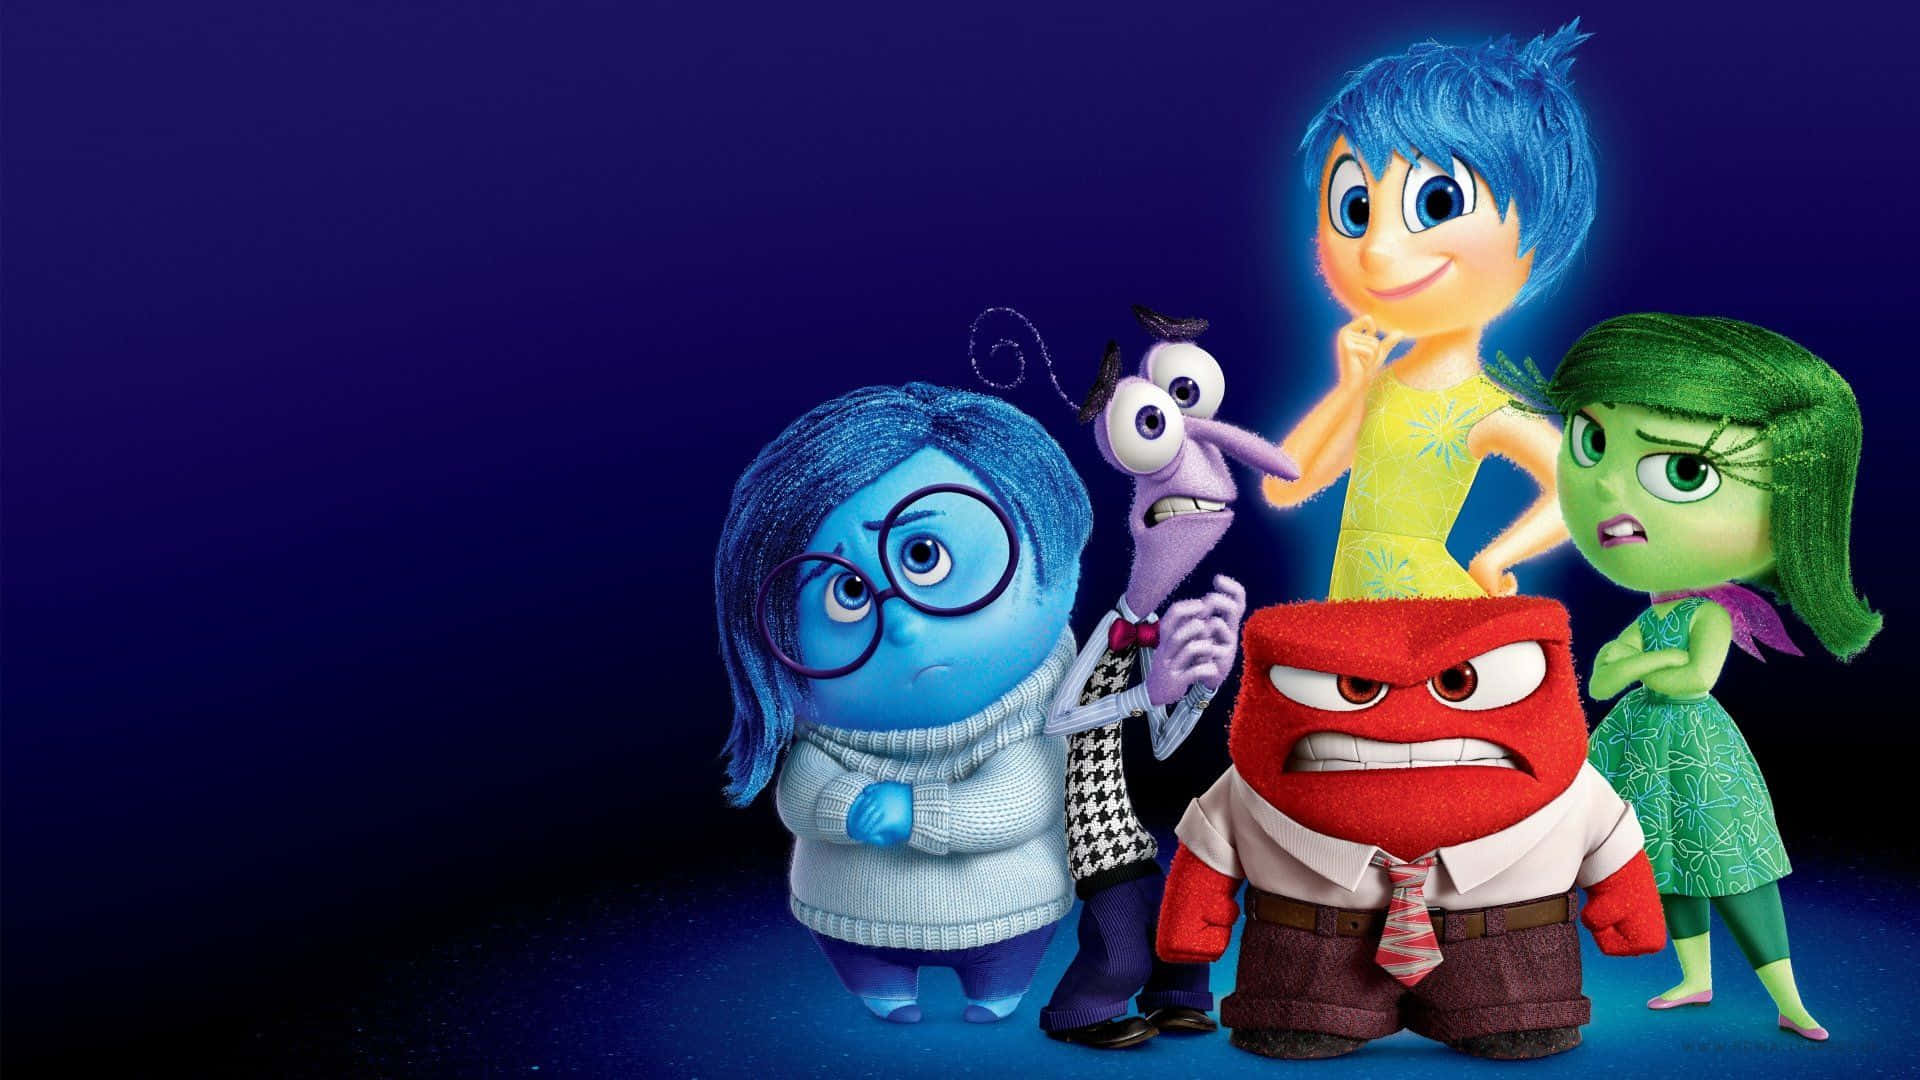 Lærde Fem Følelser Af Riley At Kende Som Set I Pixars Film 